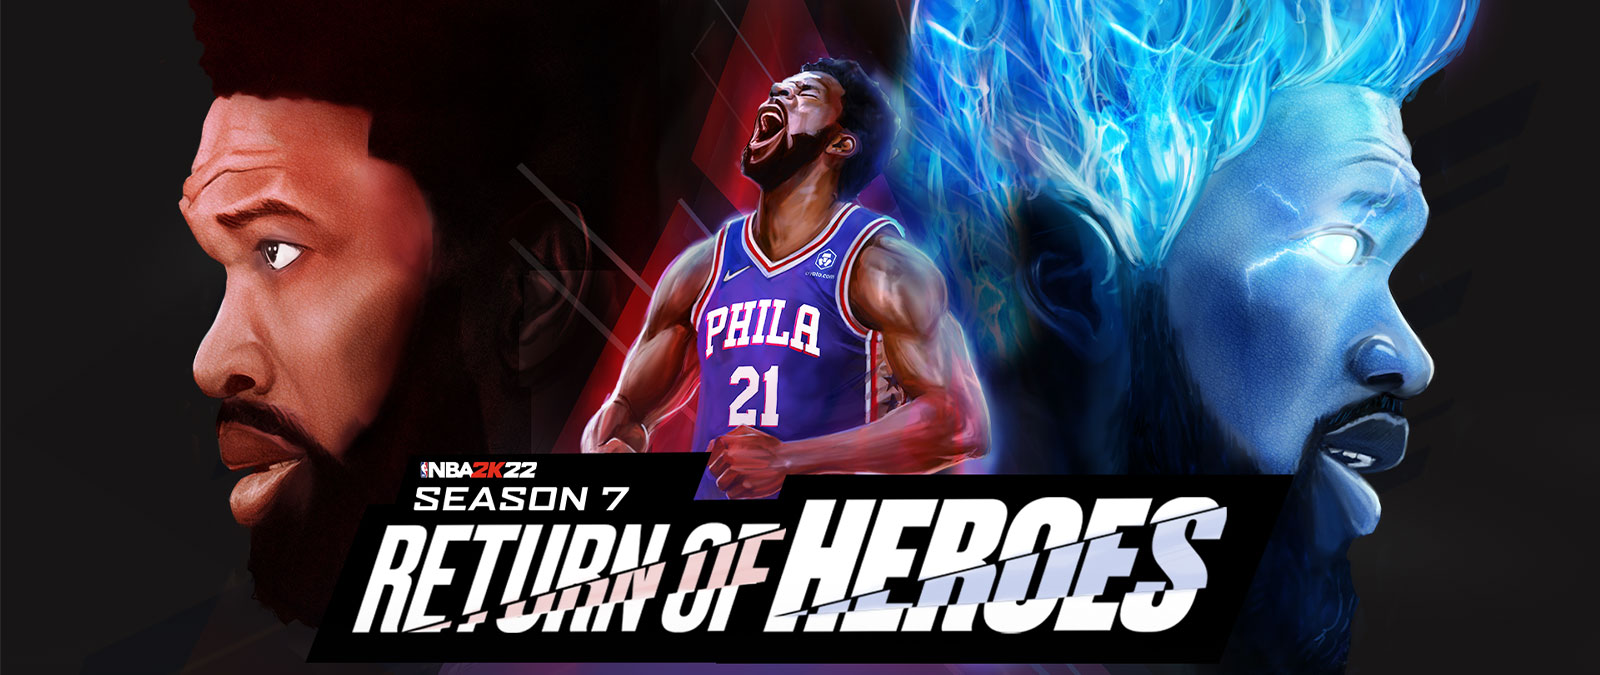 NBA 2K22, 시즌 7, 영웅의 귀환, 필라델피아의 선수가 하늘을 향해 외치고, 푸른 불꽃을 내뿜으며 파워업합니다.